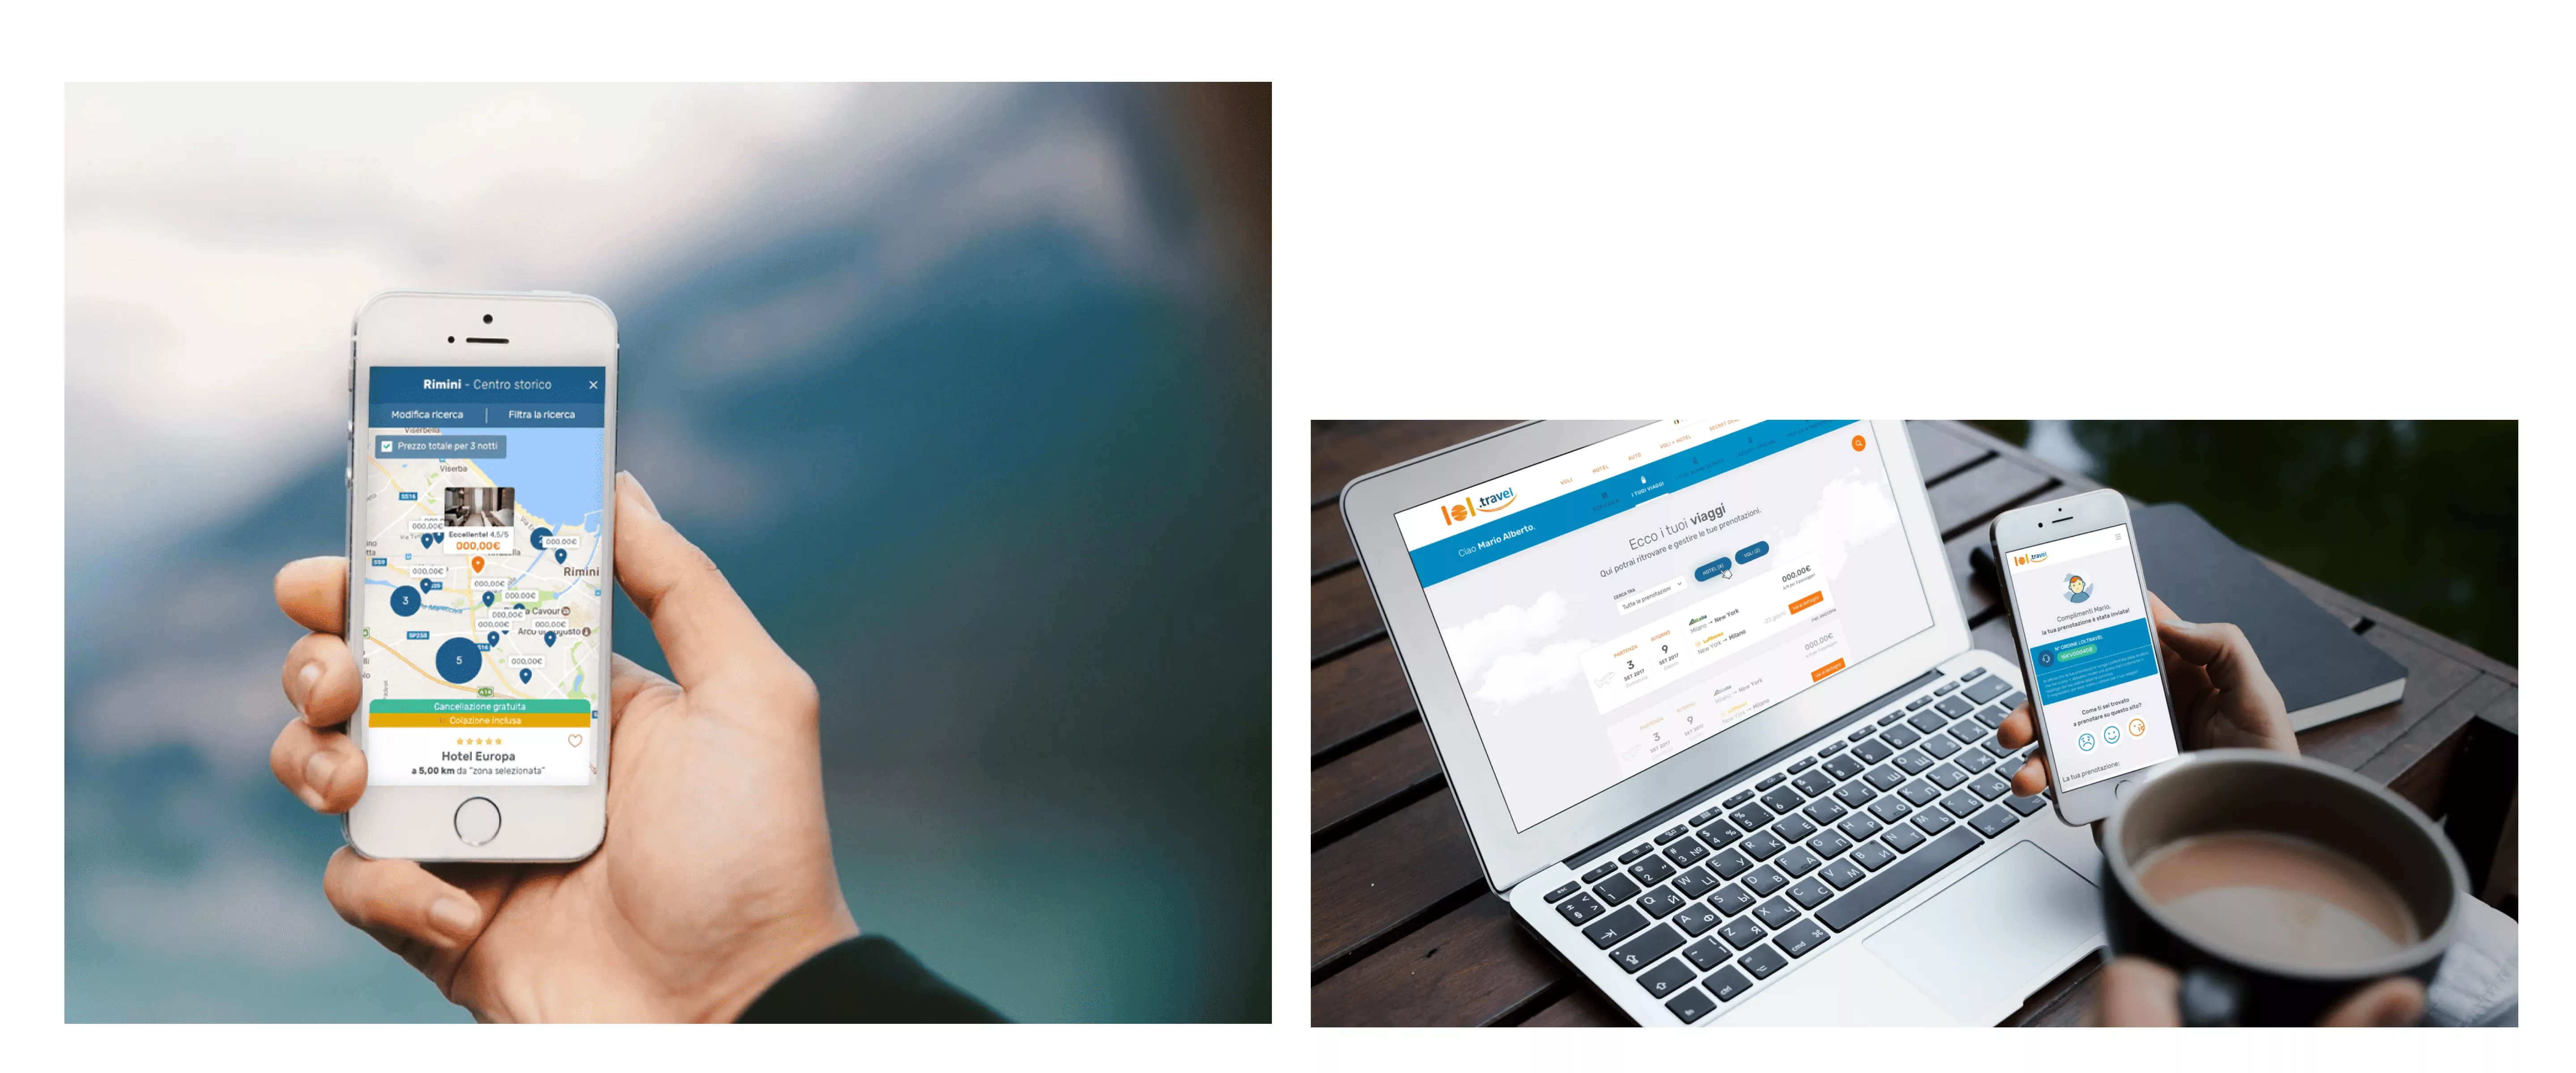 due foto: in quella a sinistra una mano tiene uno smartphone con una schermata del sito; in quella di destra un laptop e una mano tiene uno smartphone